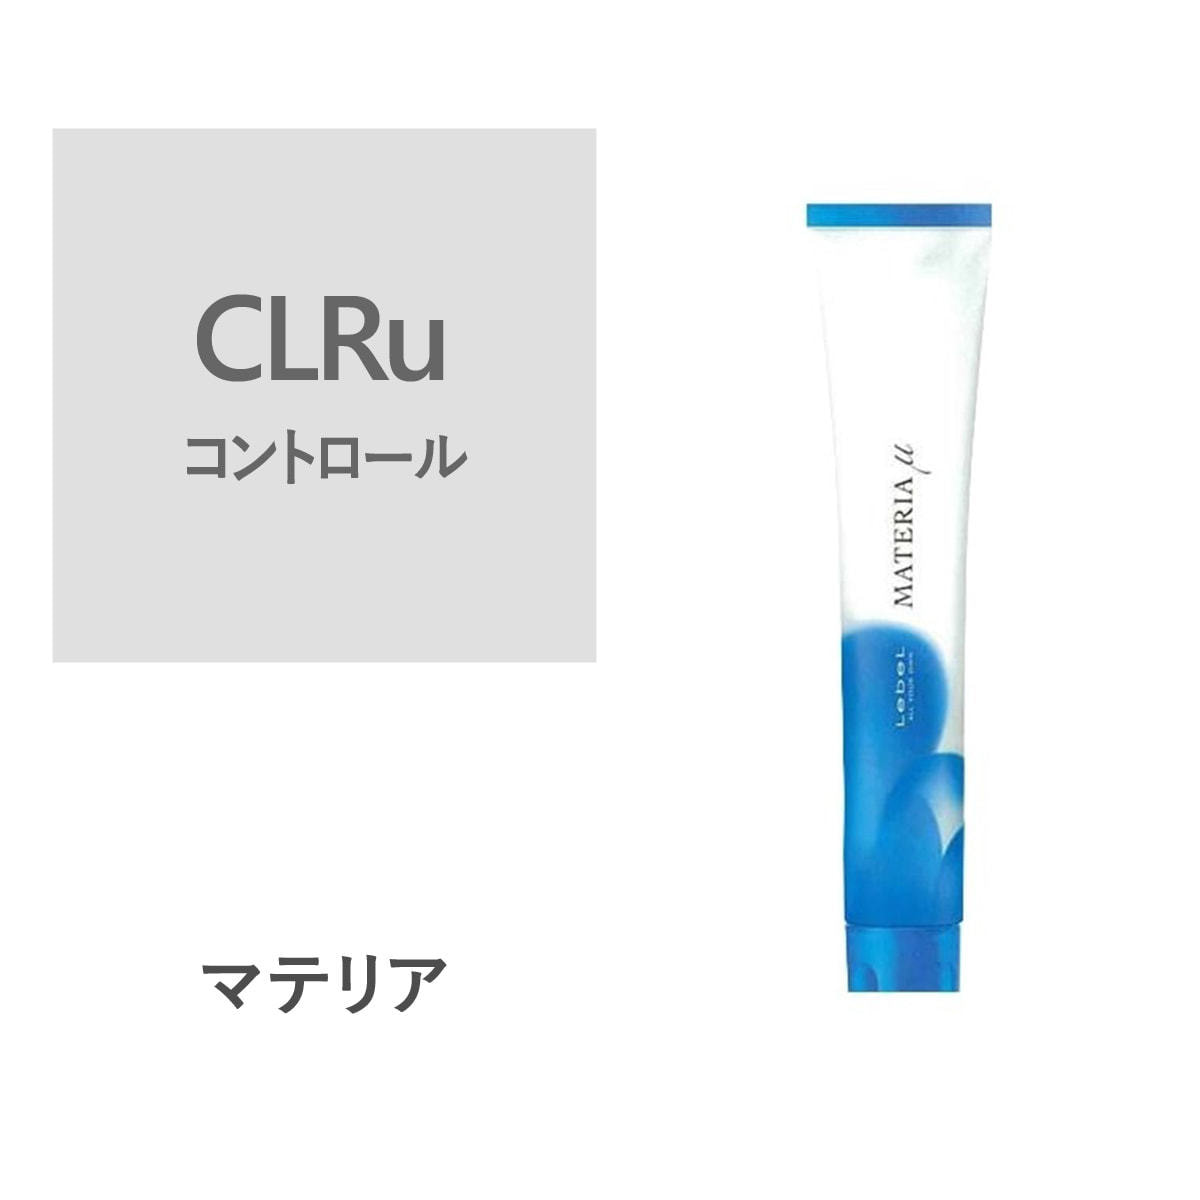 マテリアミュー CLRu 80g【医薬部外品】の卸・通販 | ビューティガレージ